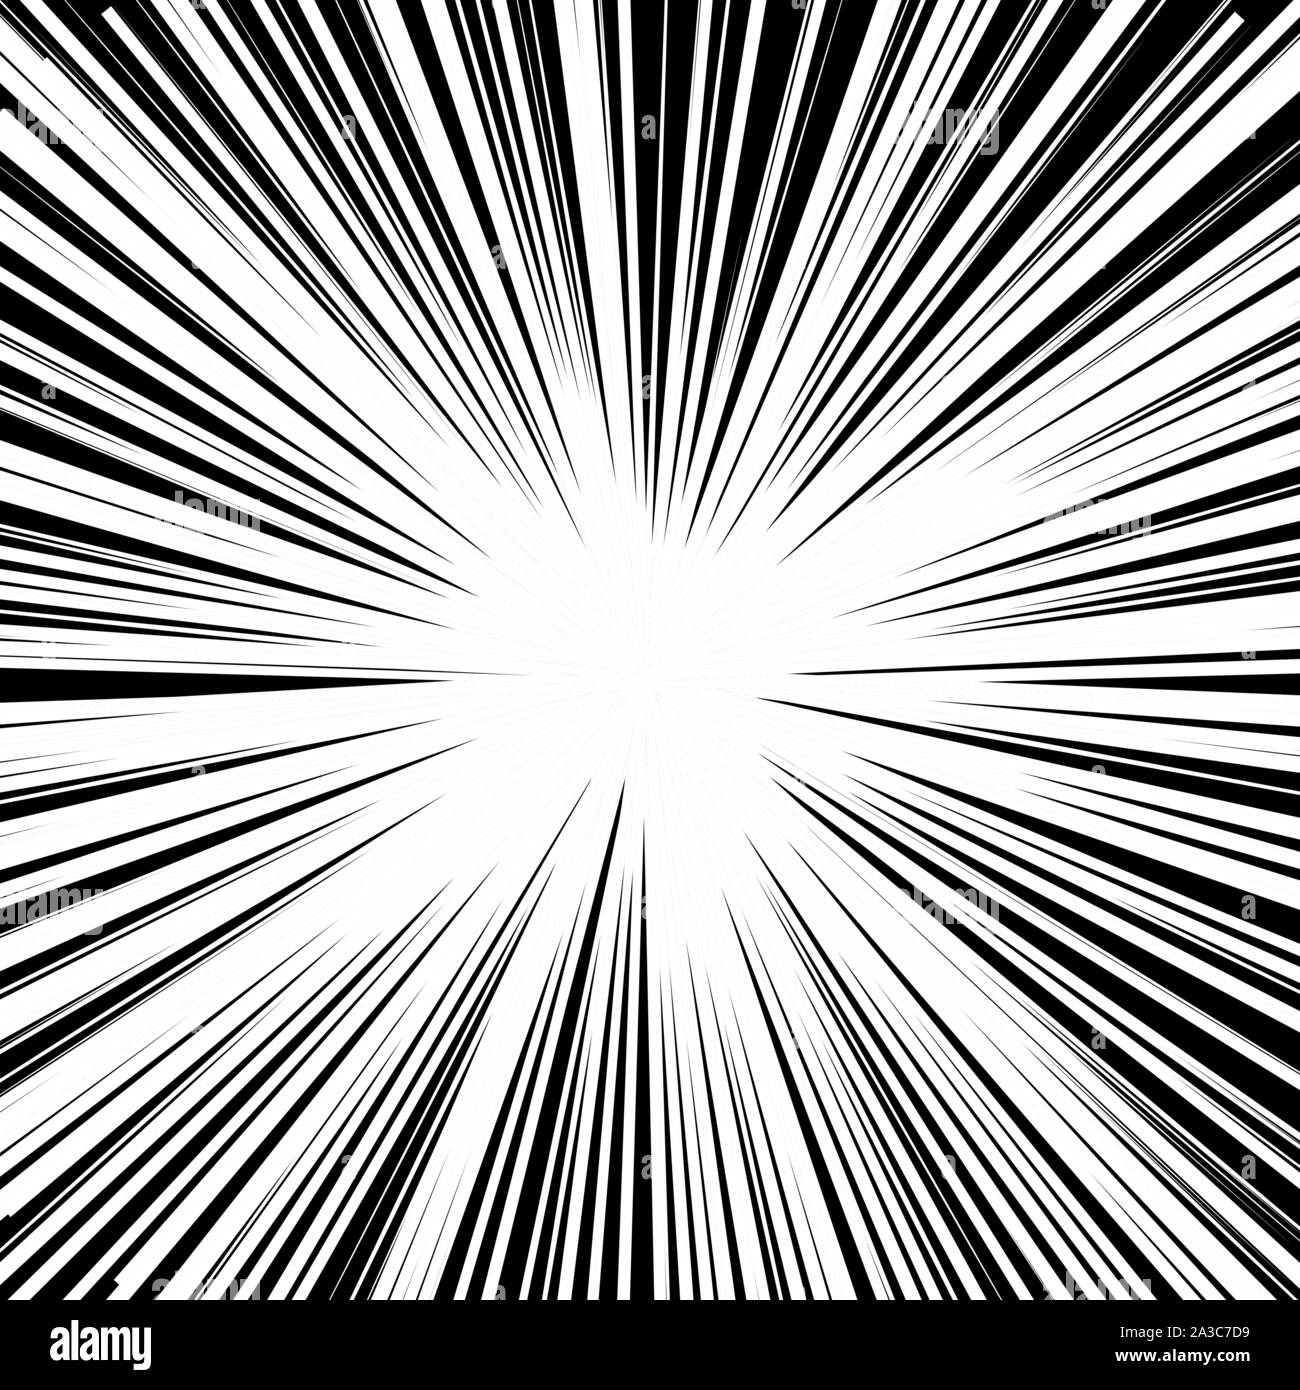 Explosivos rayos abstracto Ráfaga de dinamita blast vector de fondo Cómic  las líneas radiales en blanco y negro de fondo Manga framevelocidad de  acción de superhéroes Explosión ilustración vectorial Sello cuadrado  Imagen